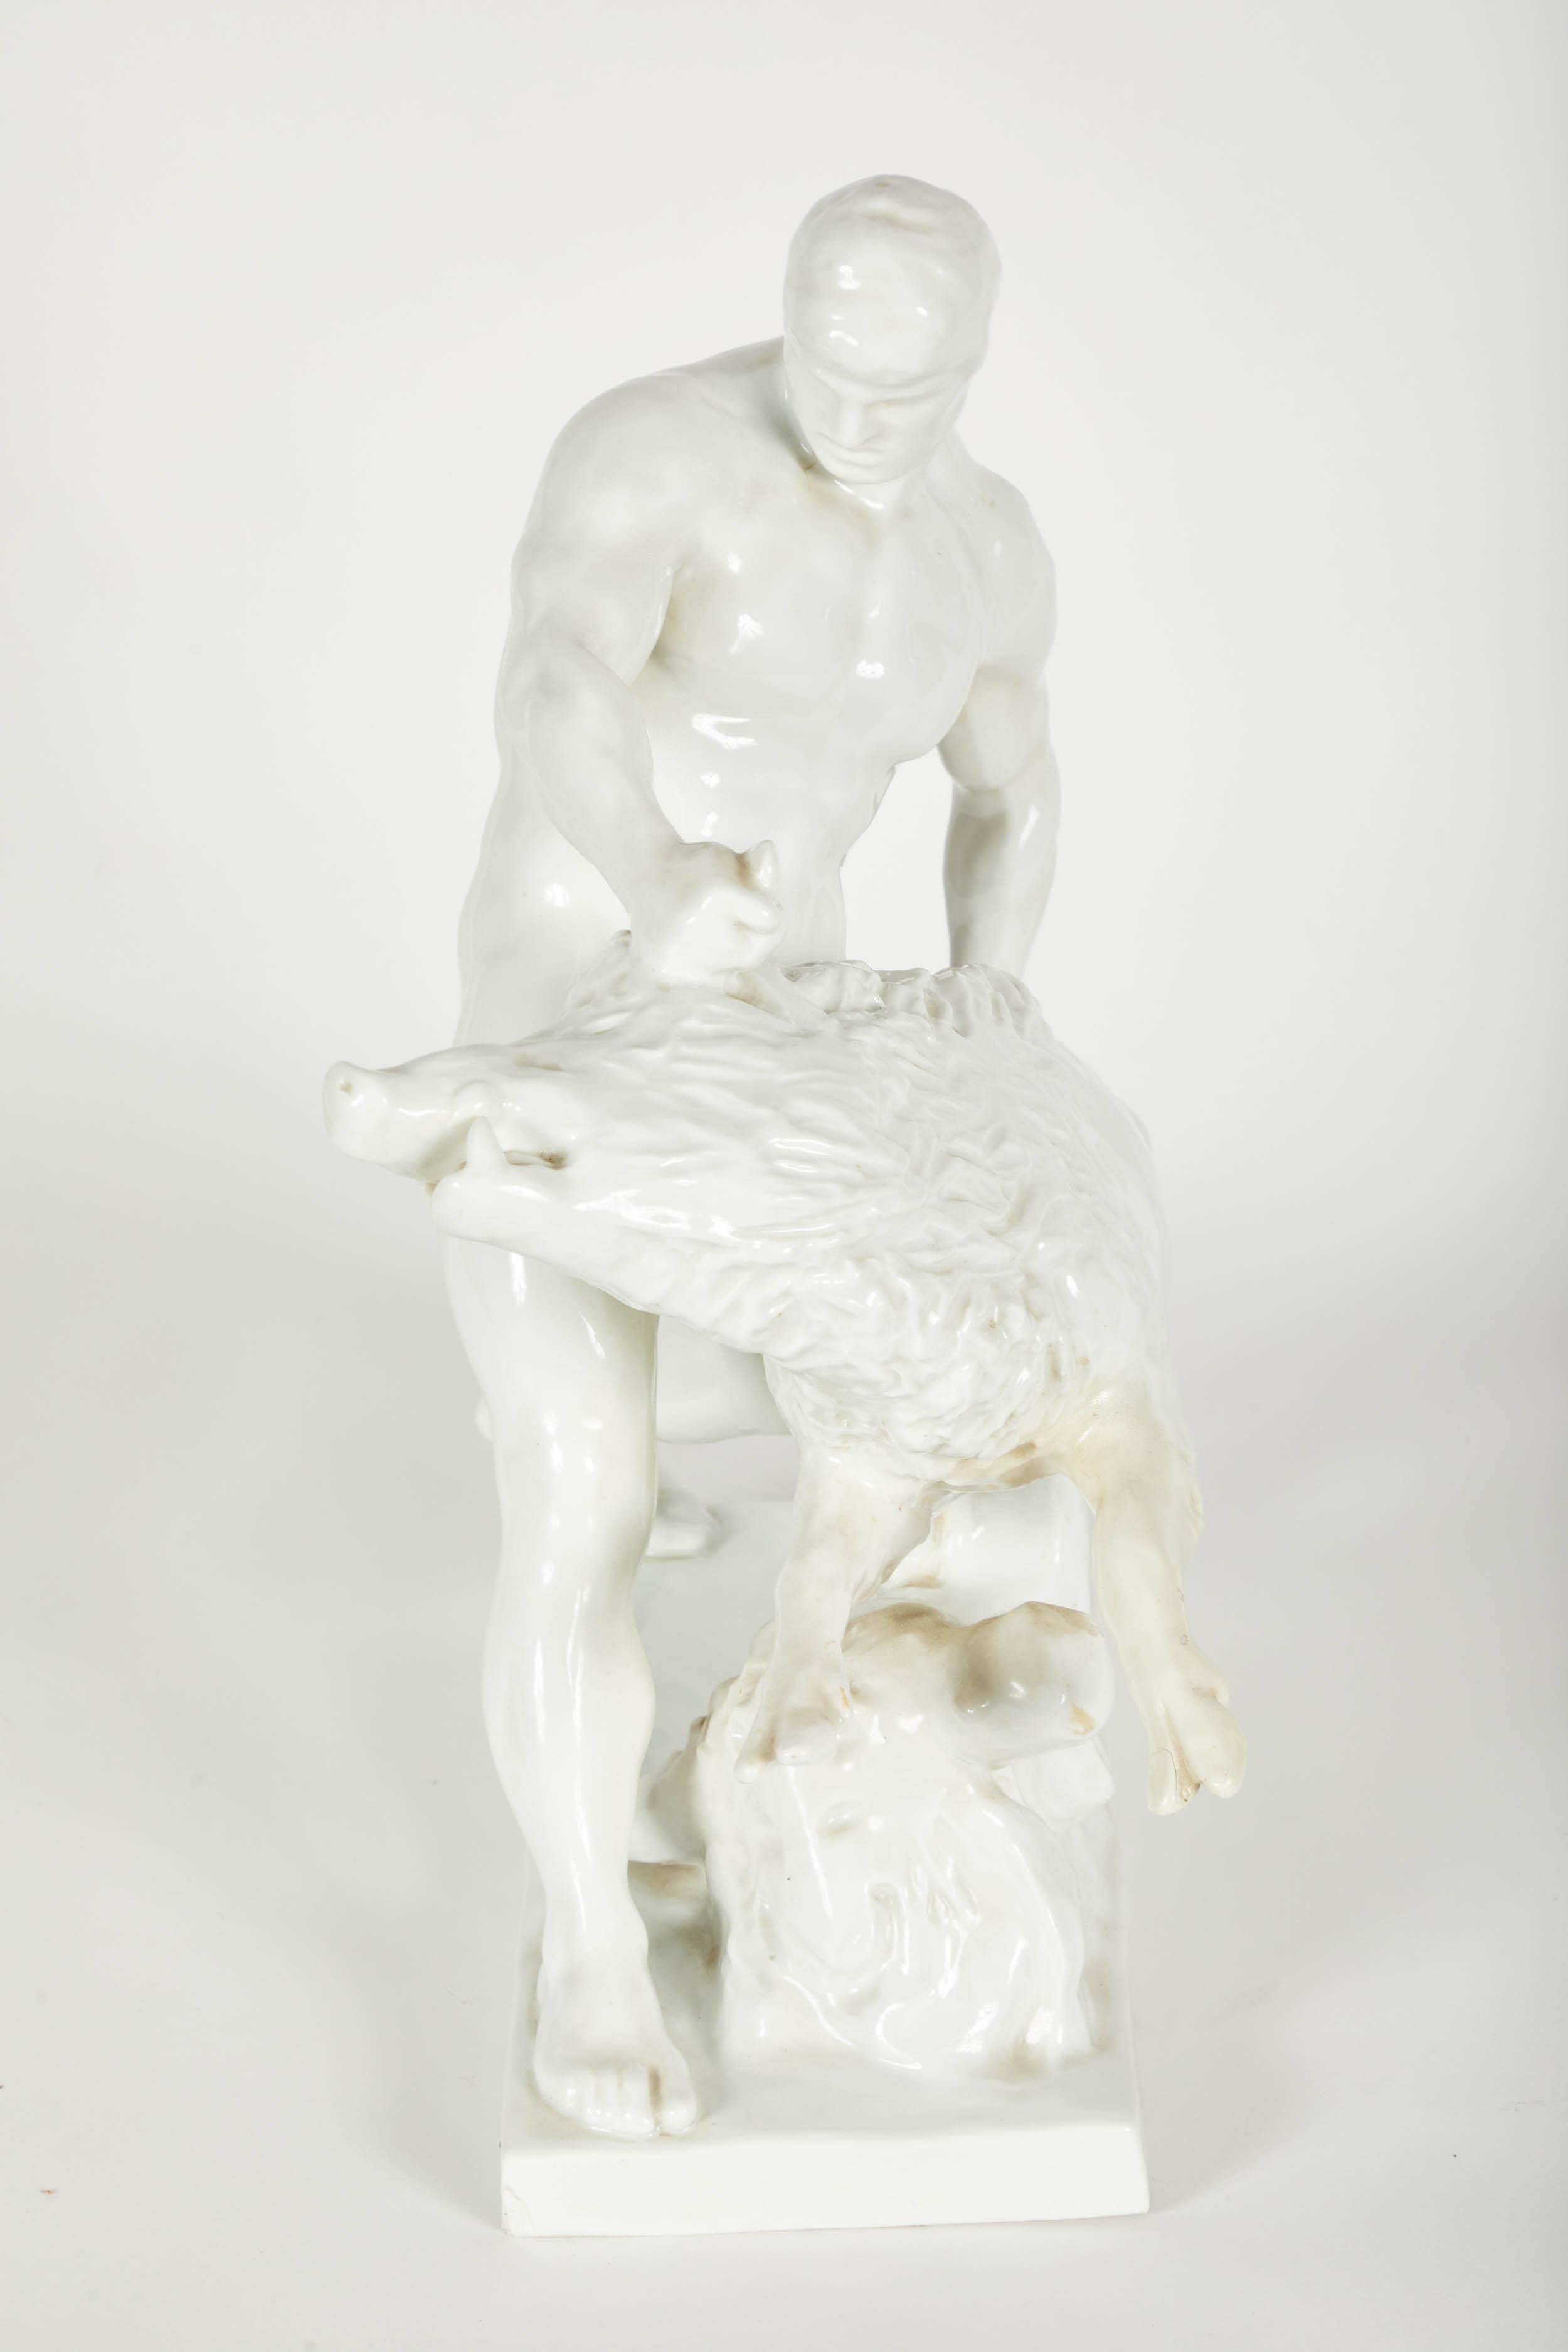 Weiße Porzellanskulptur eines Mannes, der mit einem Wildschwein ringt.